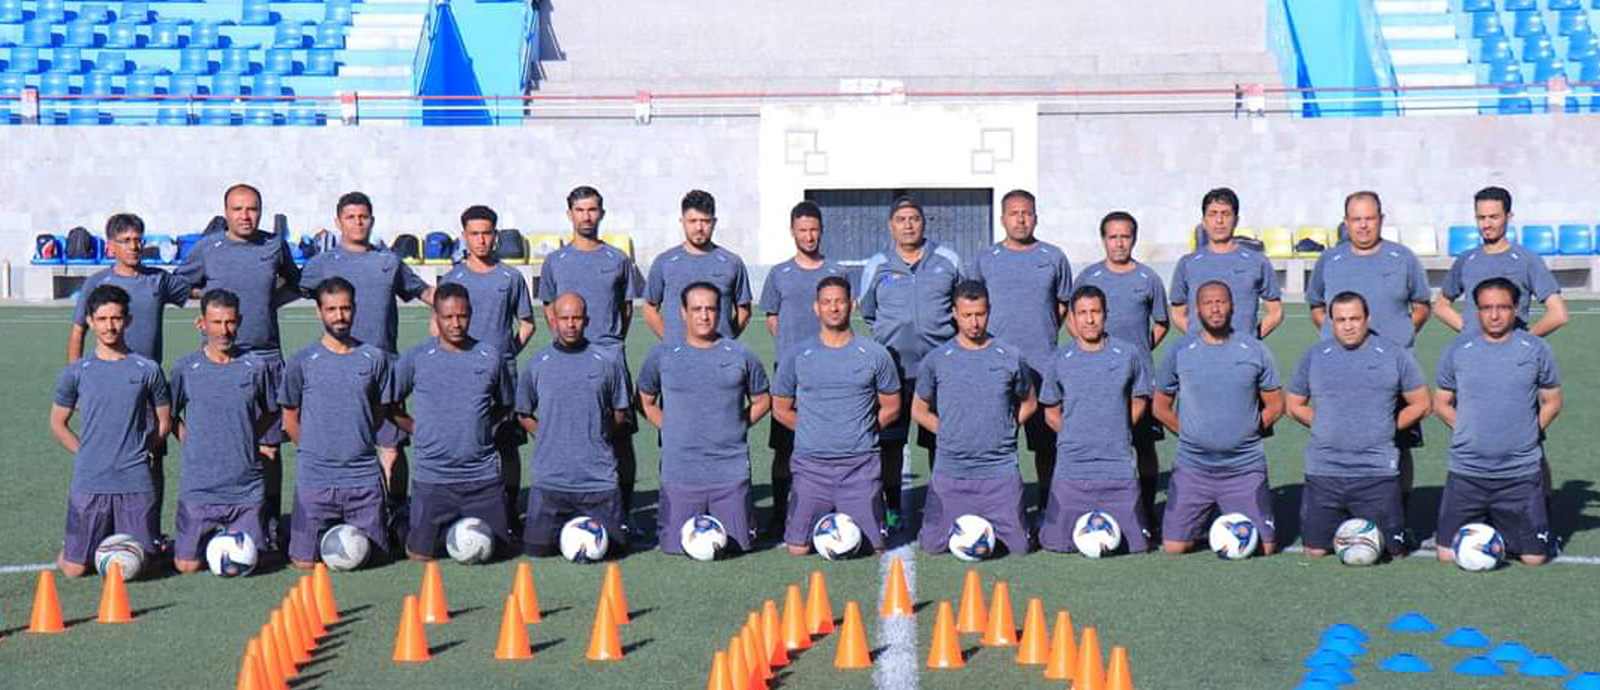 اتحاد القدم يعلن تشكيل اتحاد بمحافظة سقطرى وإقامة أول دورة آسيوية للمدربين